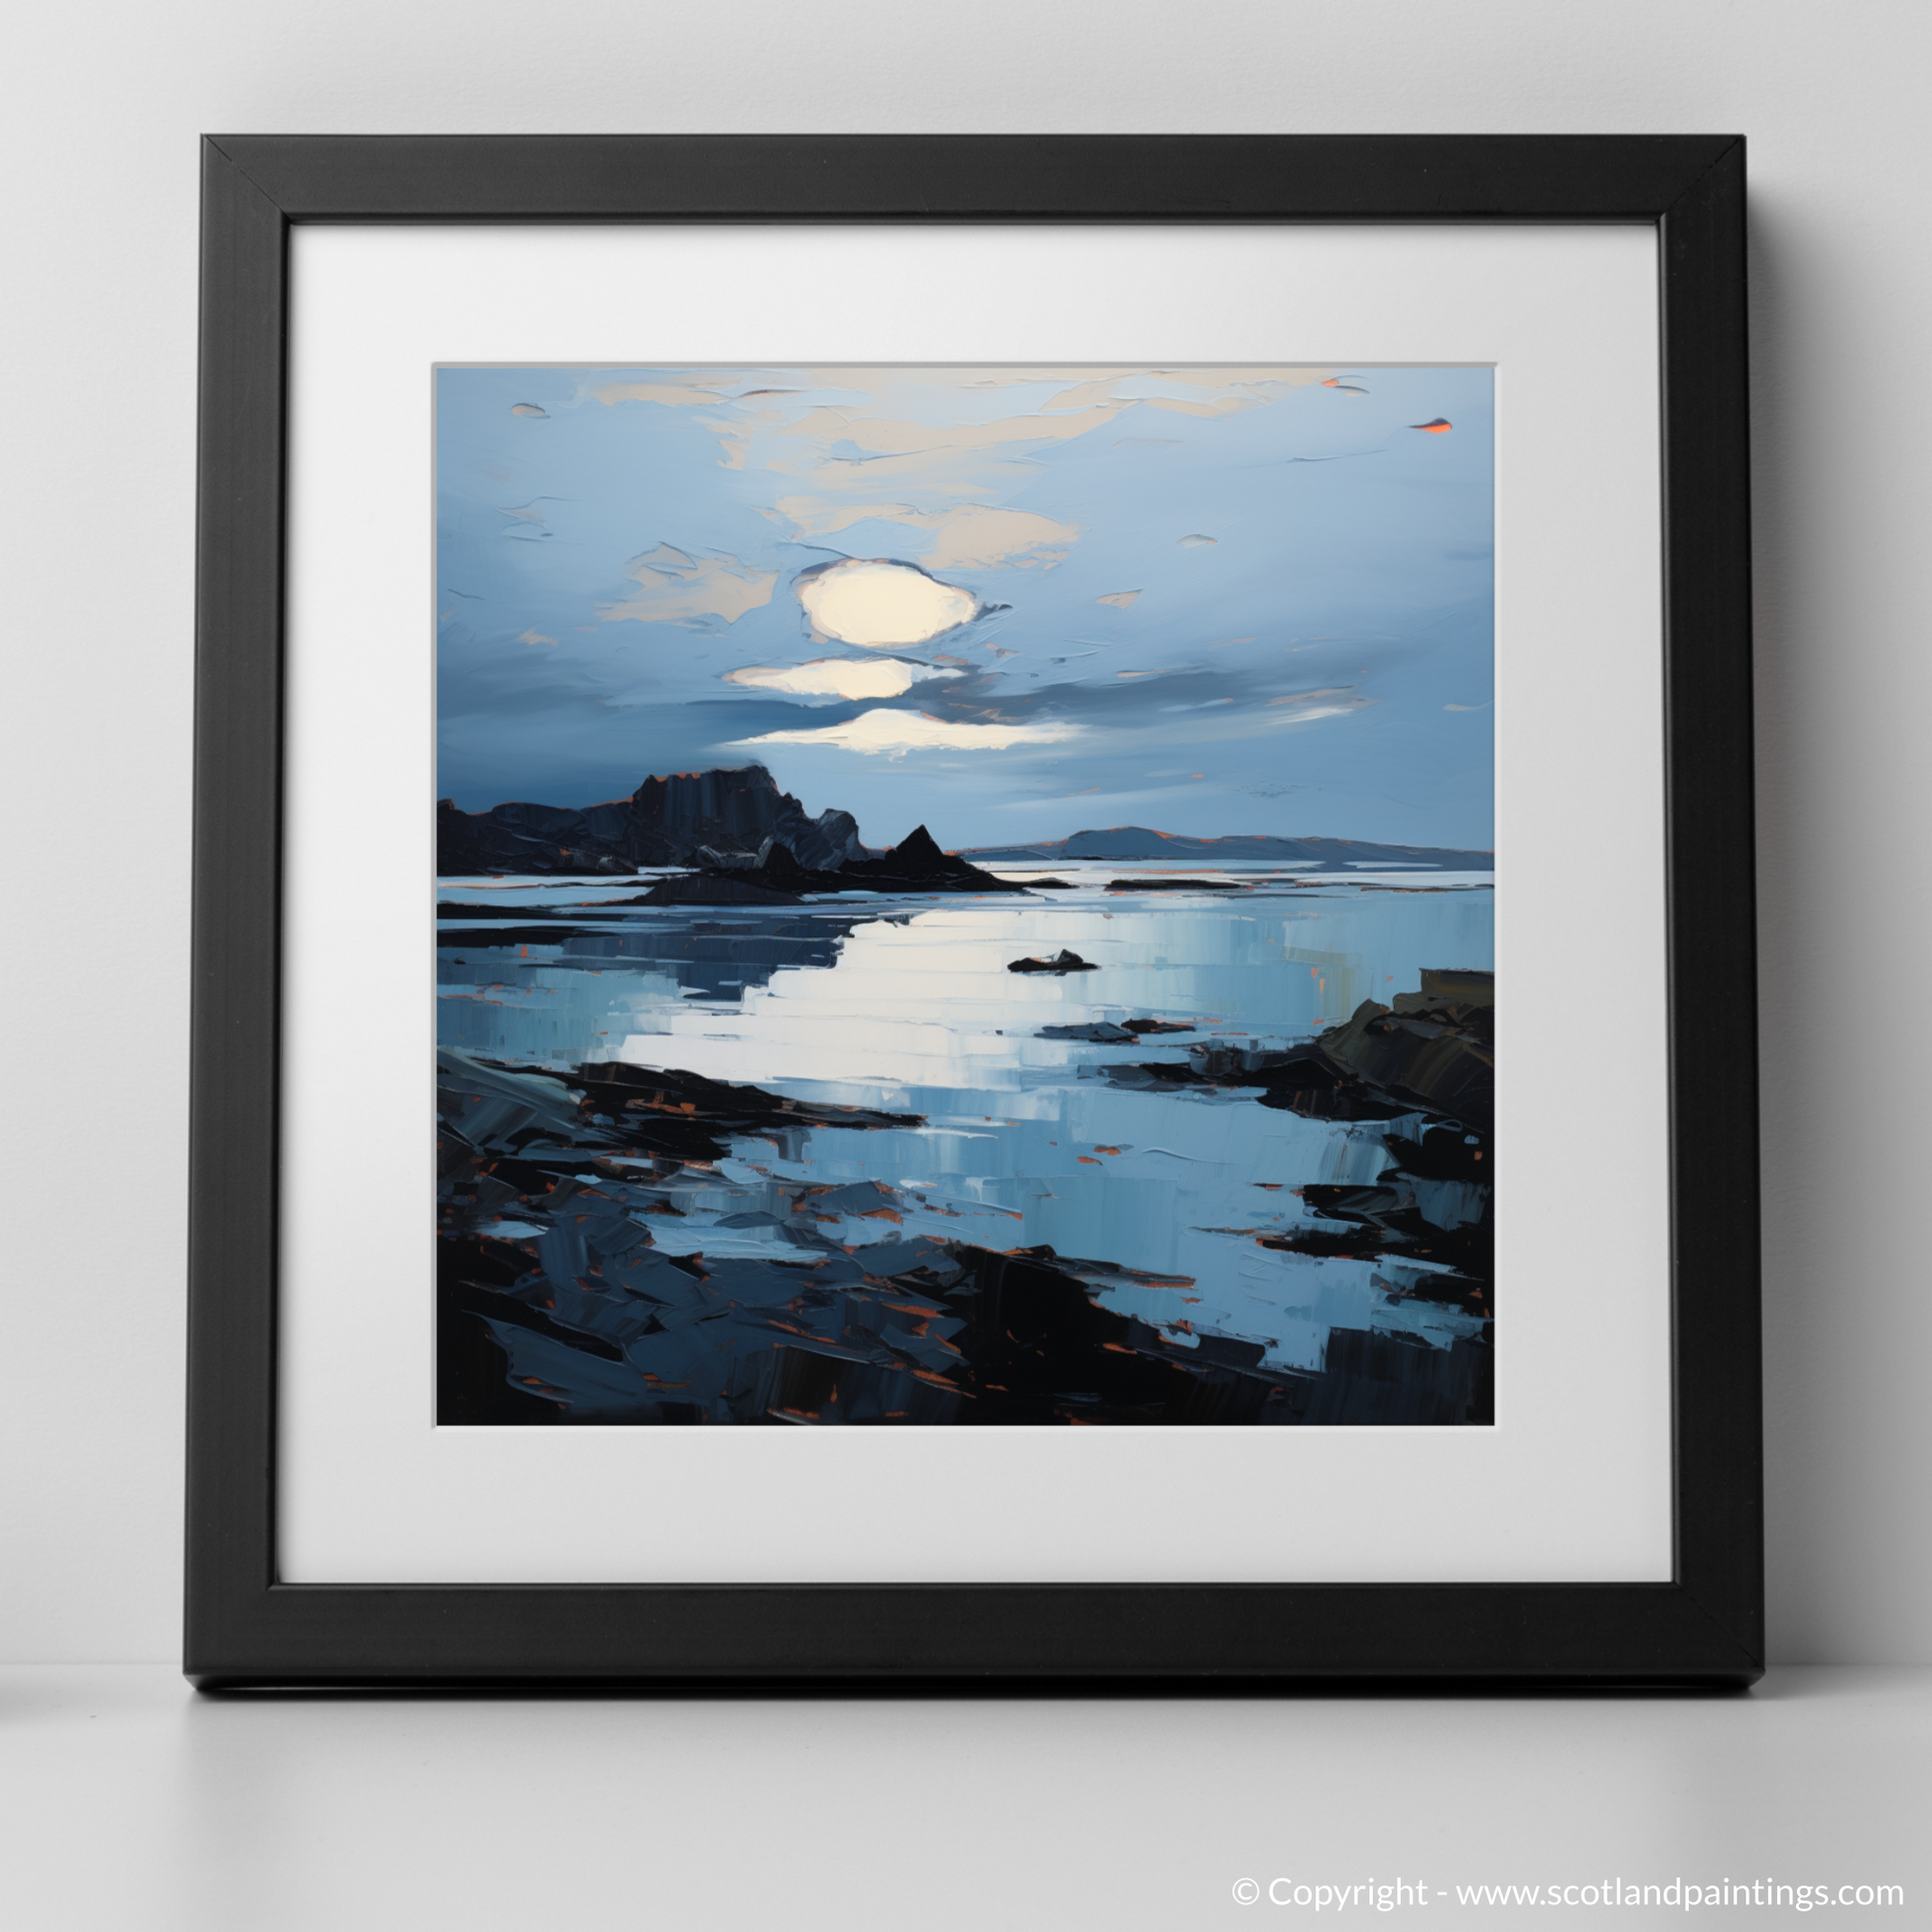 Art Print of Balnakeil Bay at dusk with a black frame